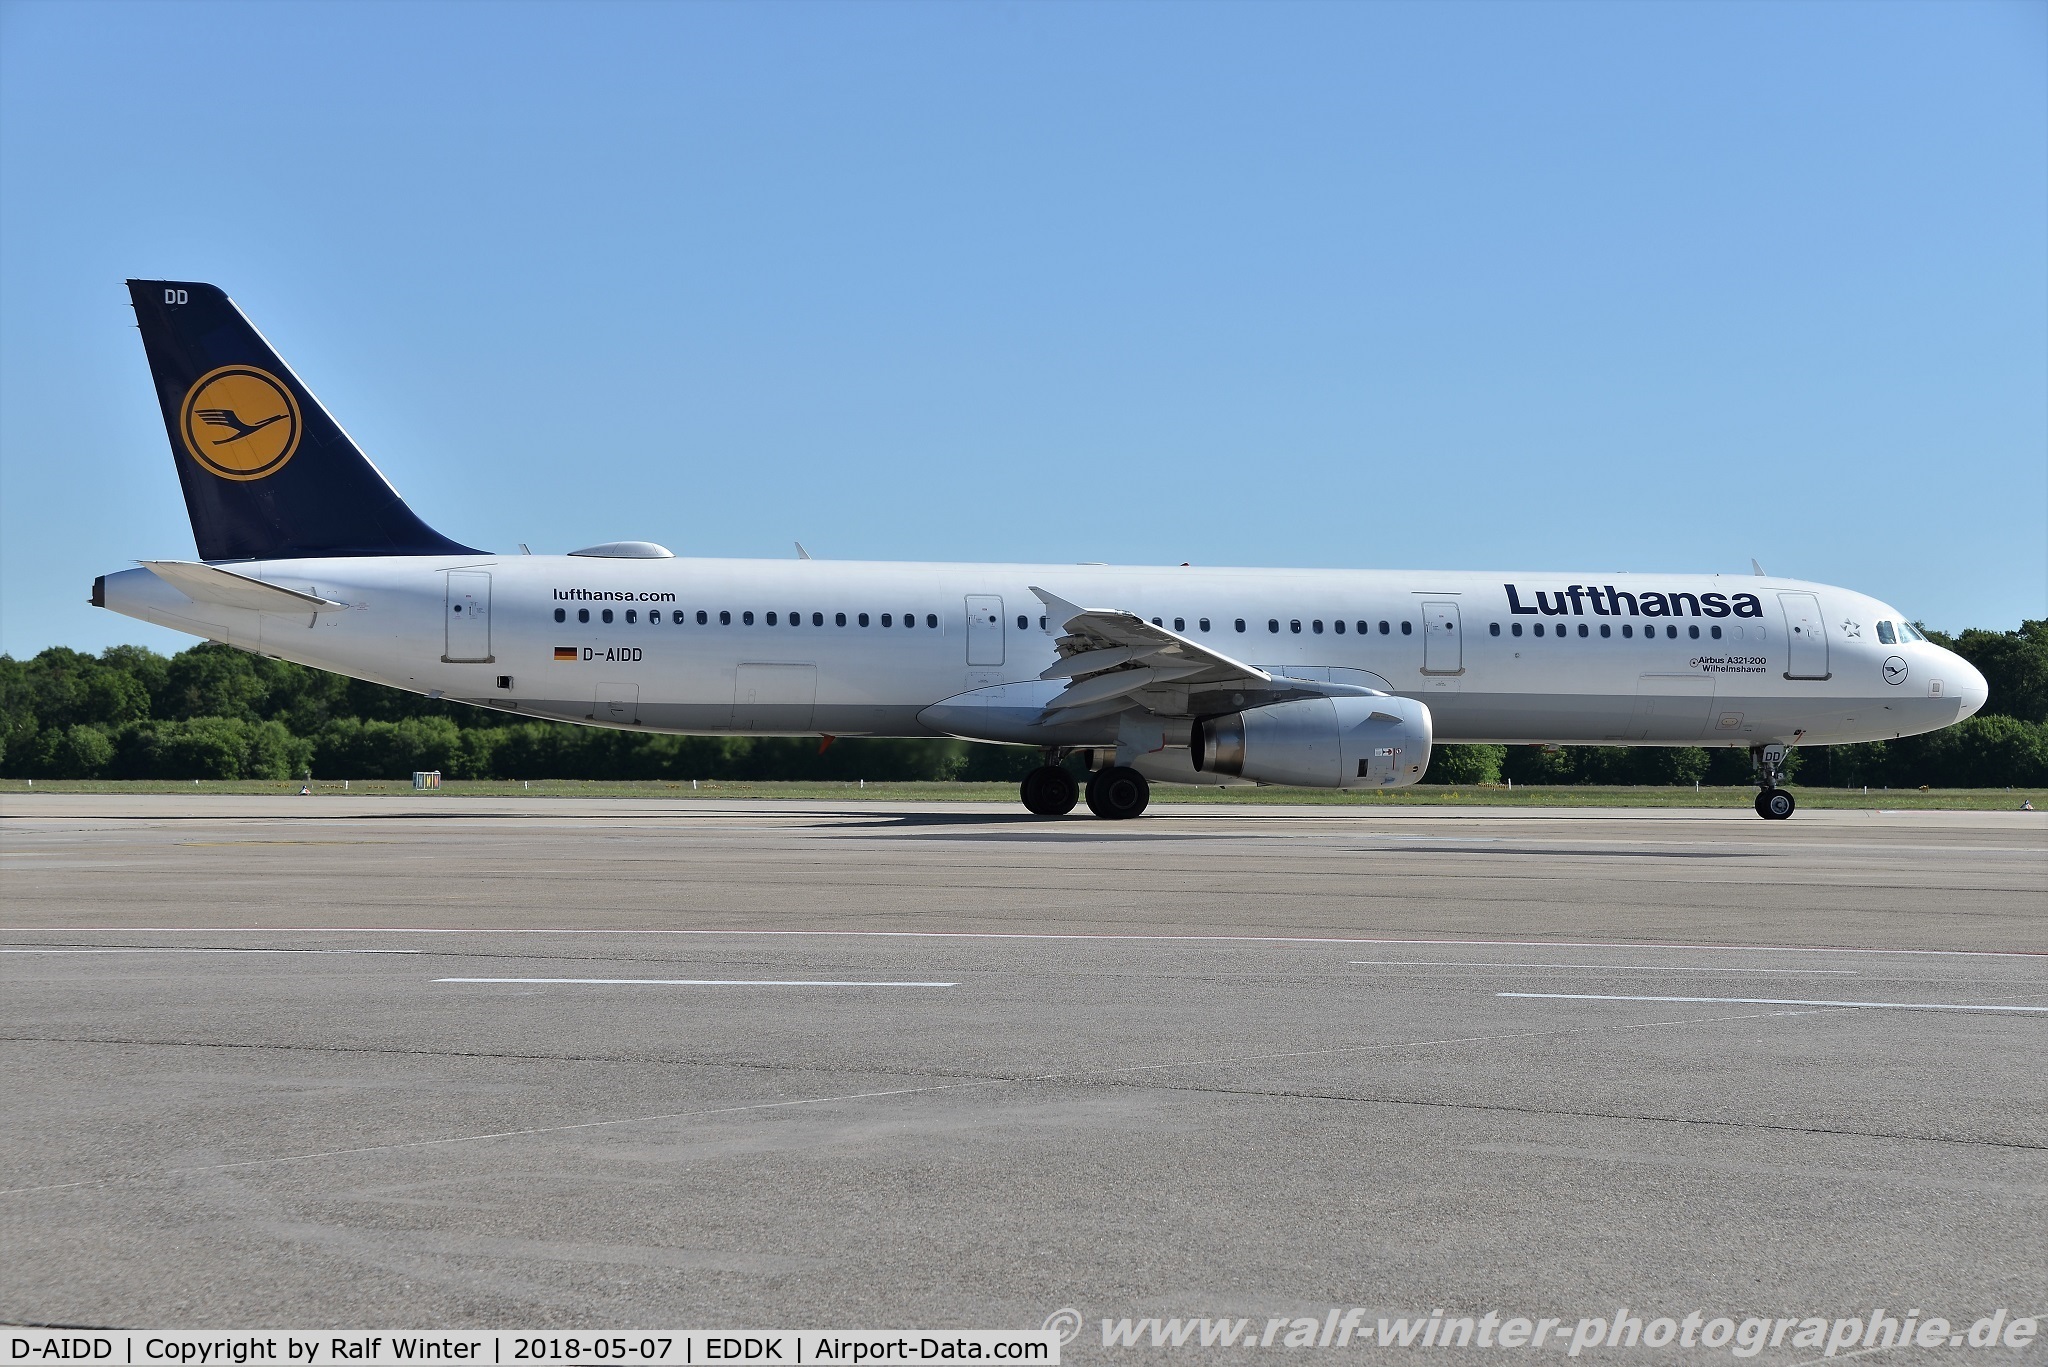 D-AIDD, 2010 Airbus A321-231 C/N 4585, Airbus A321-231 - LH DLH Lufthansa 'Wilhelmshaven' - 4585 - D-AIDD - 07.05.2018 - CGN